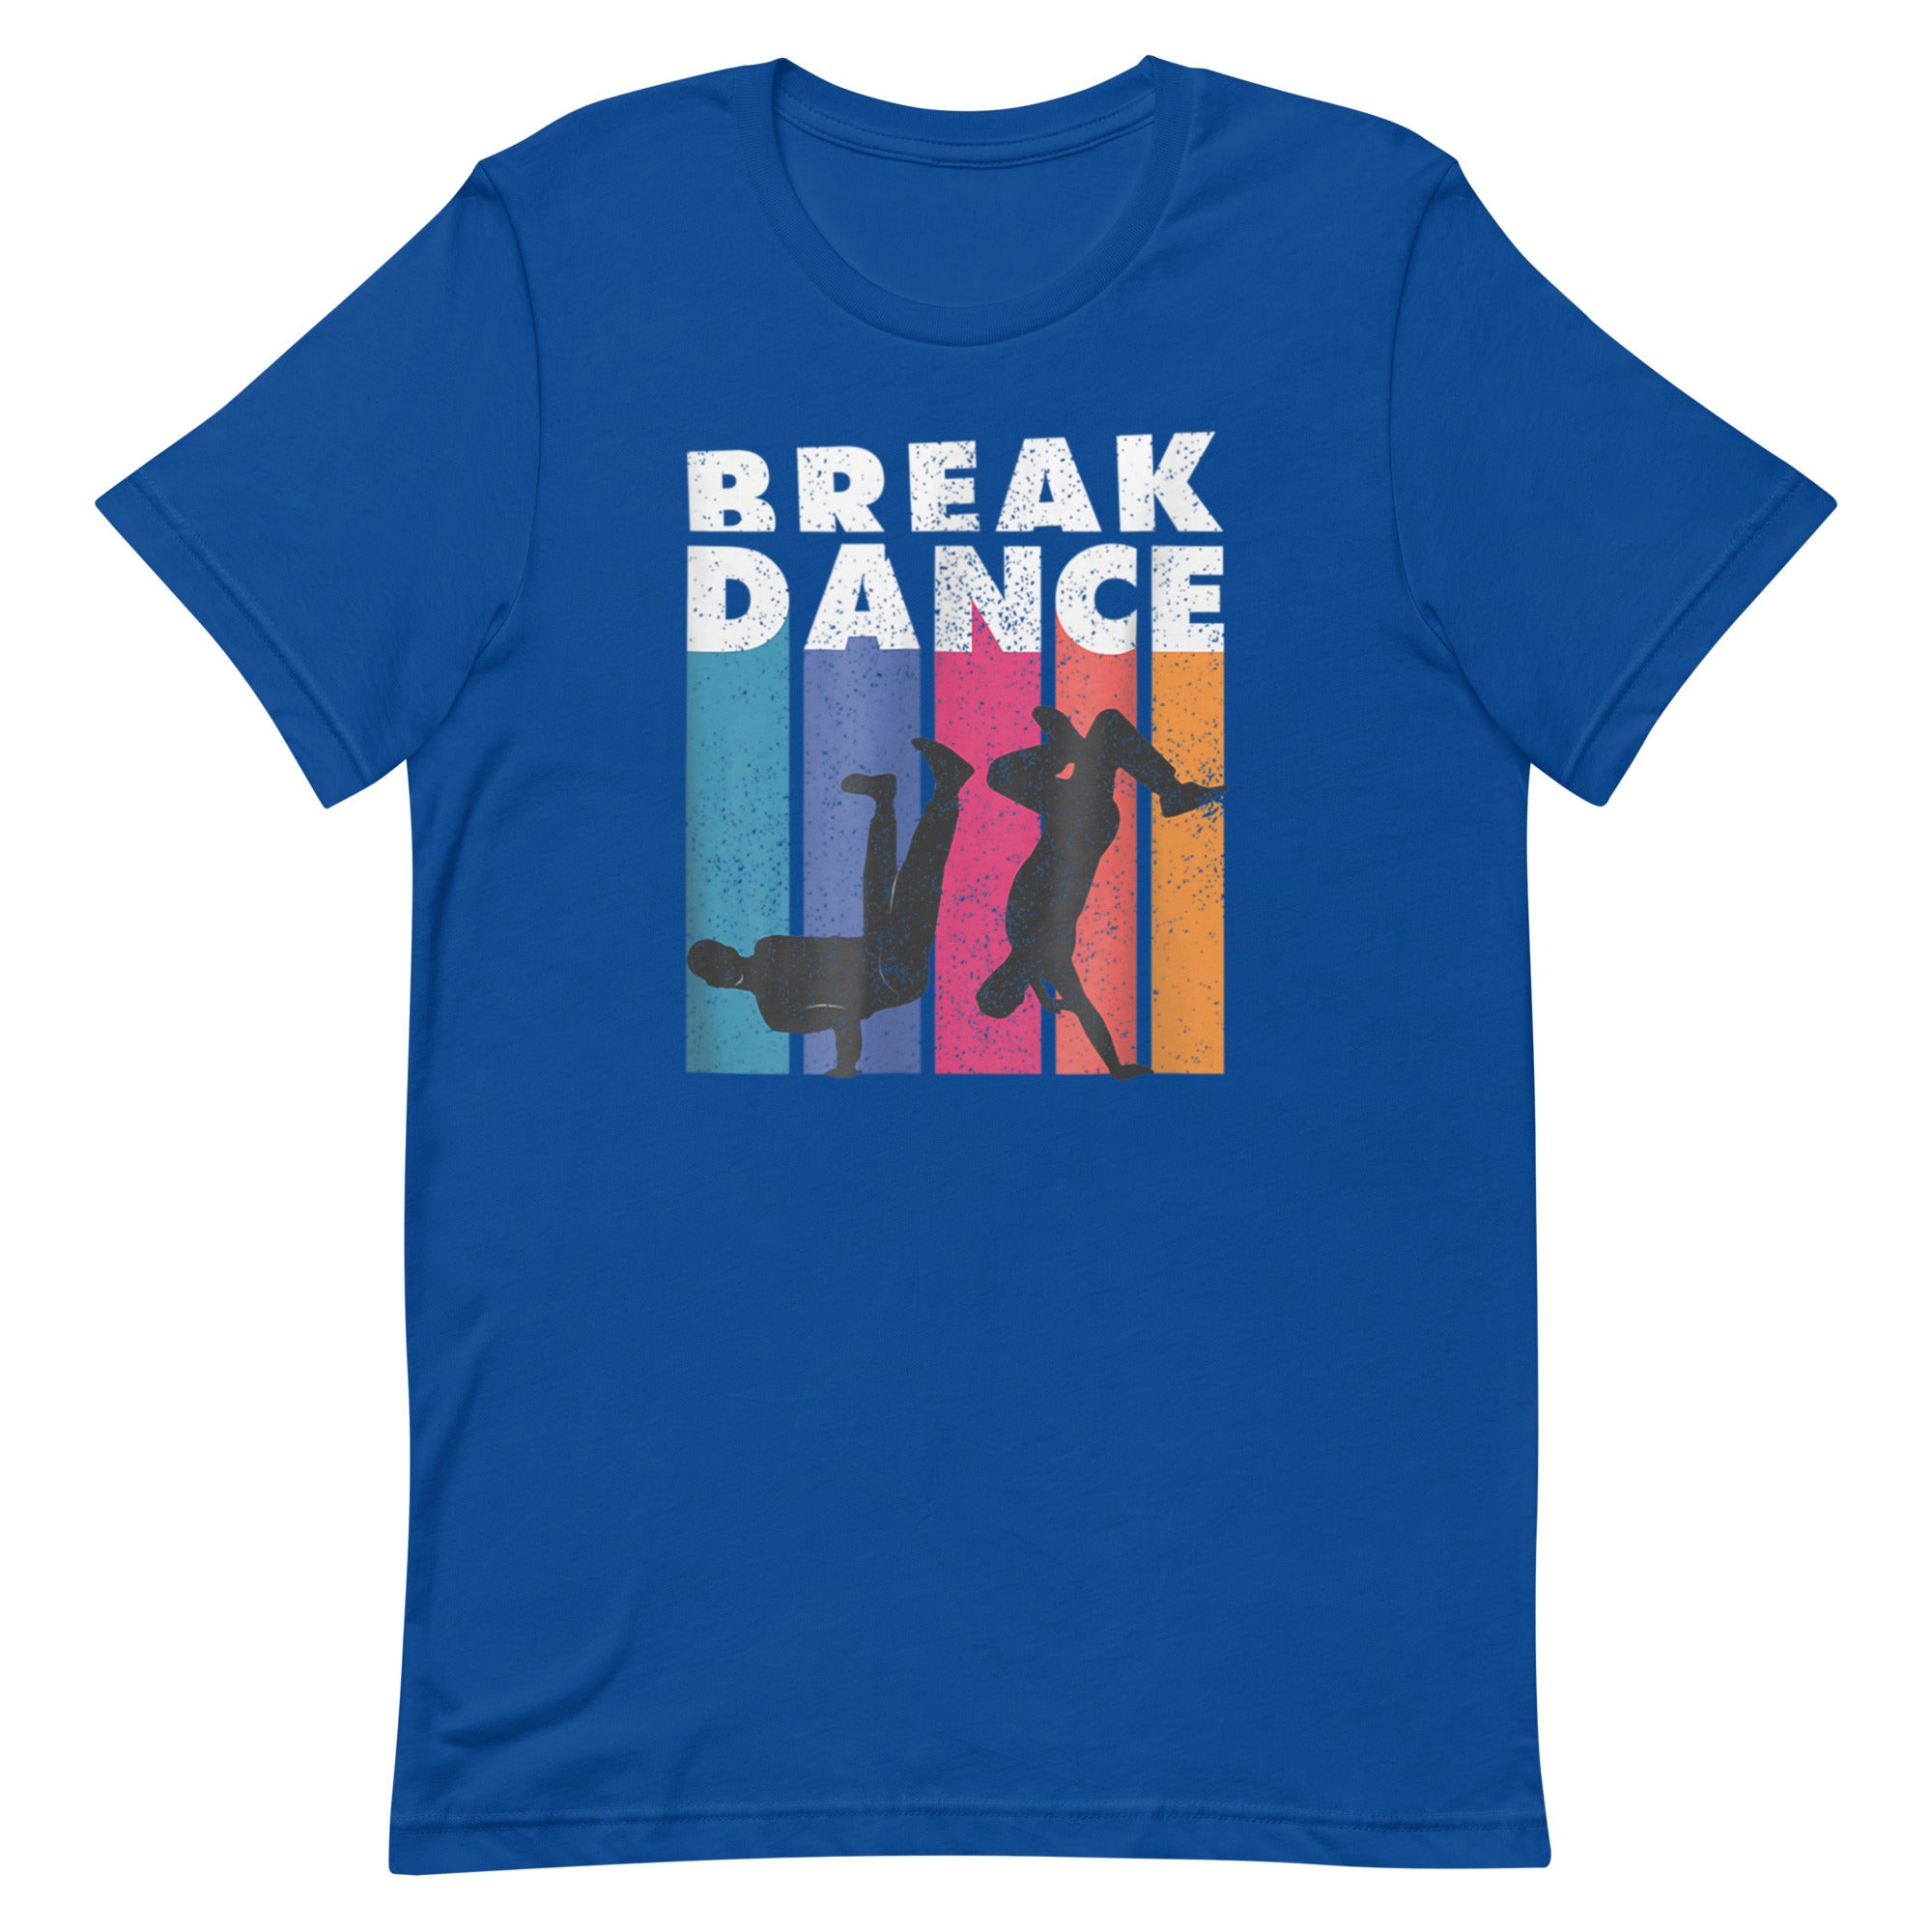 BREAK DANCE Unisex t-shirt - Hiphopya